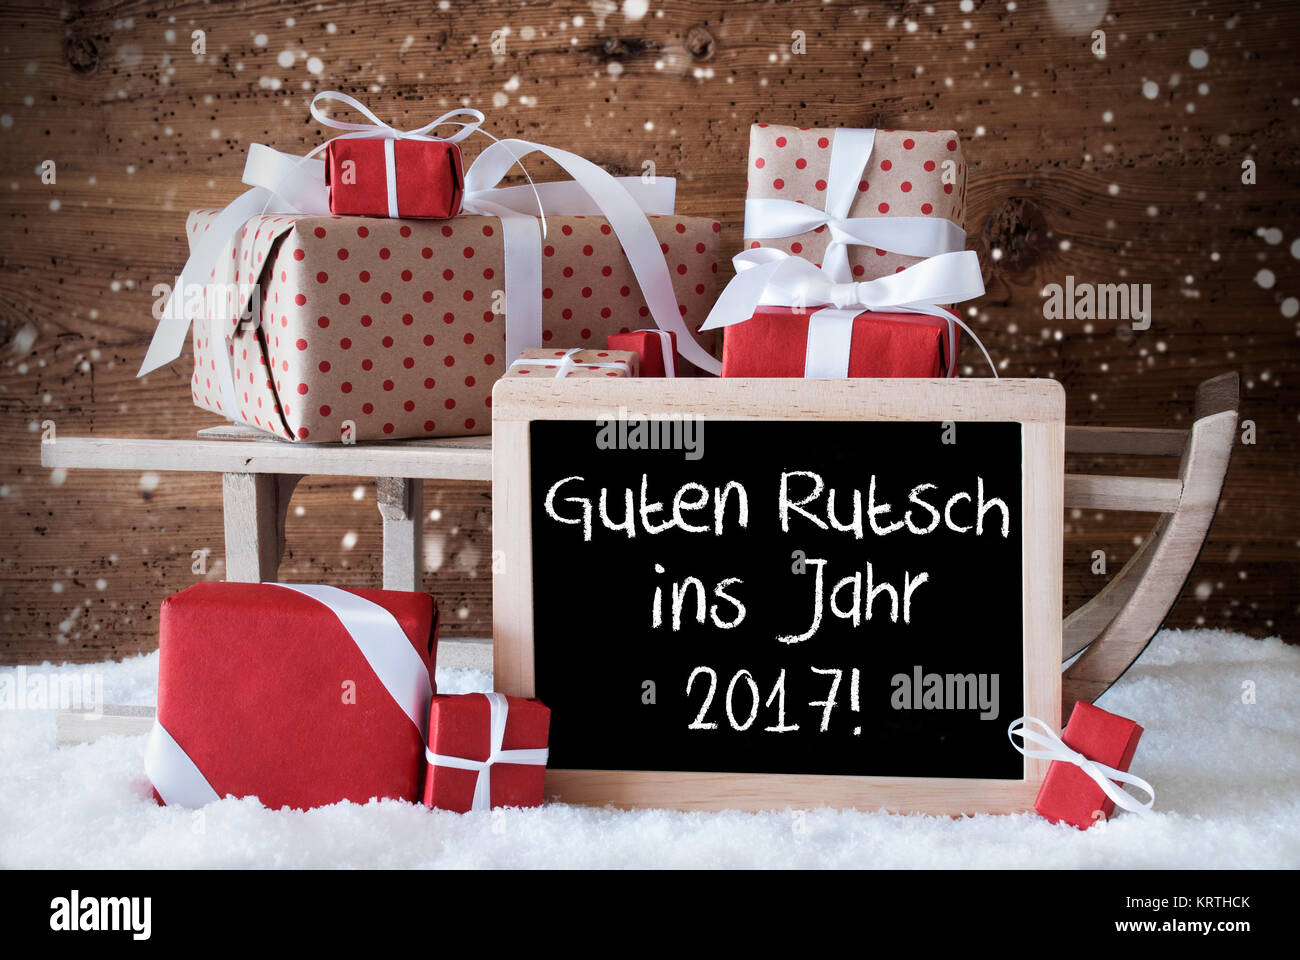 Tableau sur lequel un texte Allemand Guten Rutsch ins Jahr 2017 signifie bonne année. Traîneau avec Noël et la décoration de l'hiver et les flocons de neige. Cadeaux et présente sur la neige en fond de bois. Banque D'Images